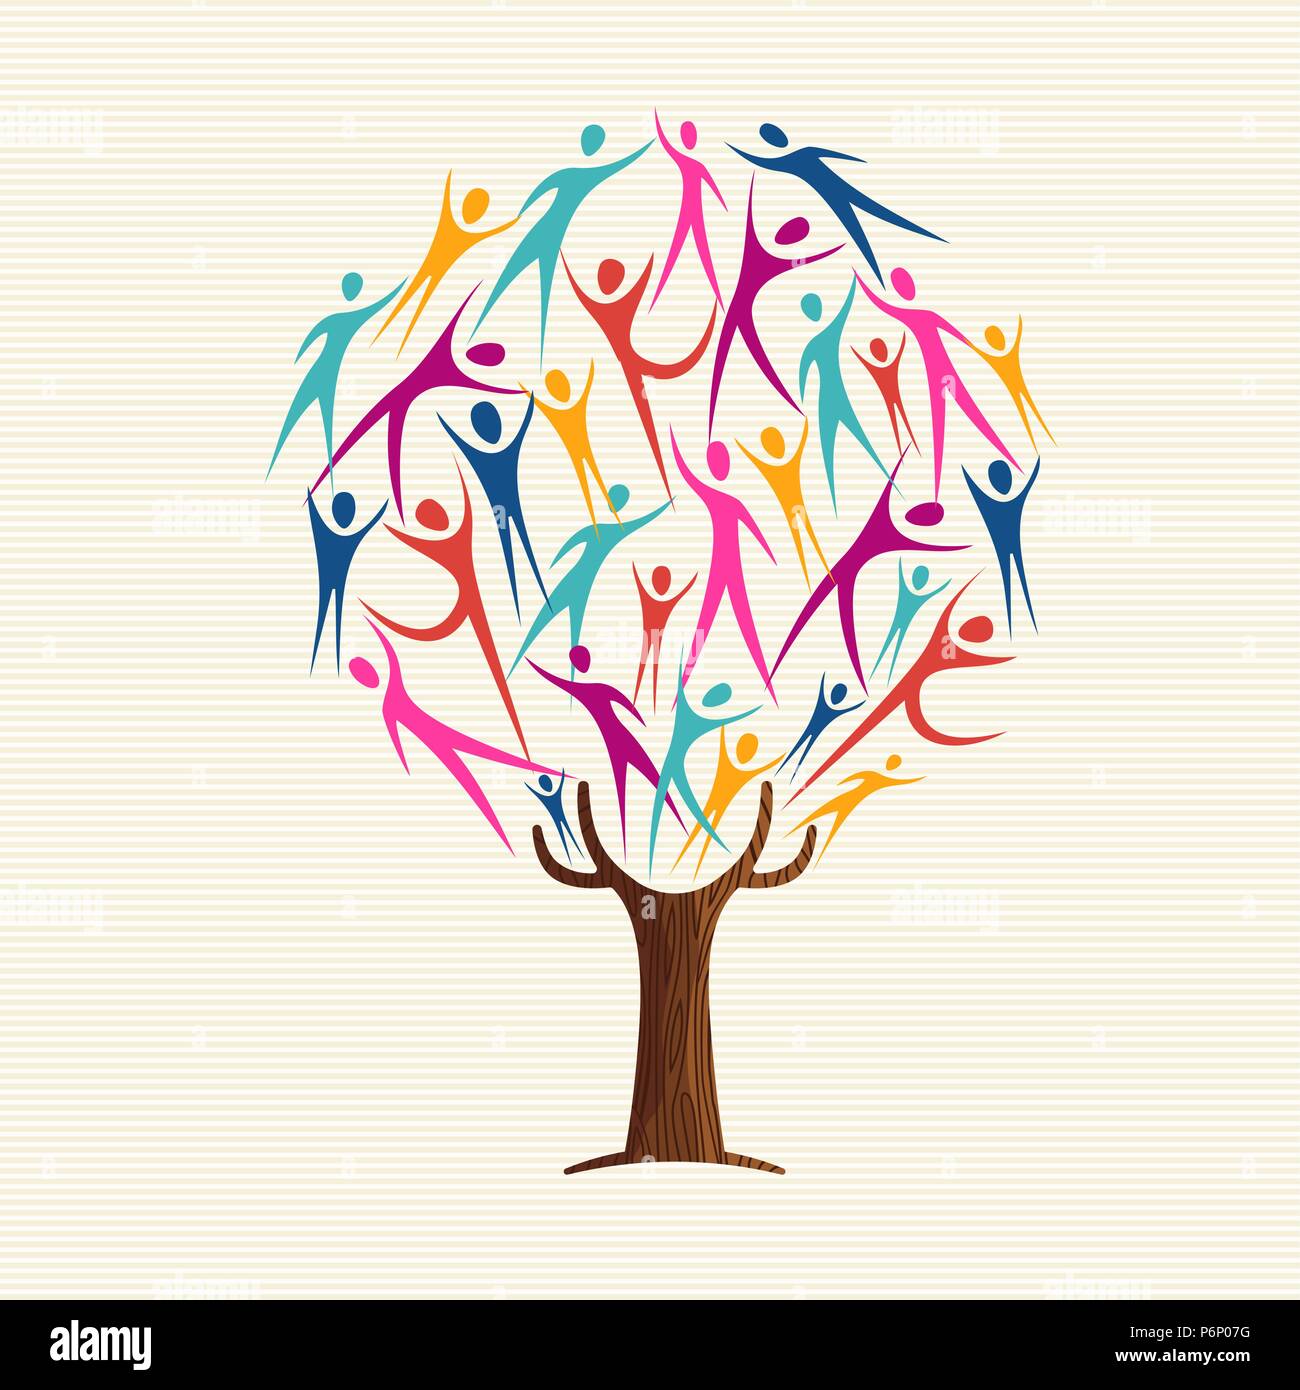 Baum aus bunten Menschen Silhouetten. Community Hilfe Konzept, vielfältige Kultur Gruppe oder sozialen Projekt. EPS 10 Vektor. Stock Vektor